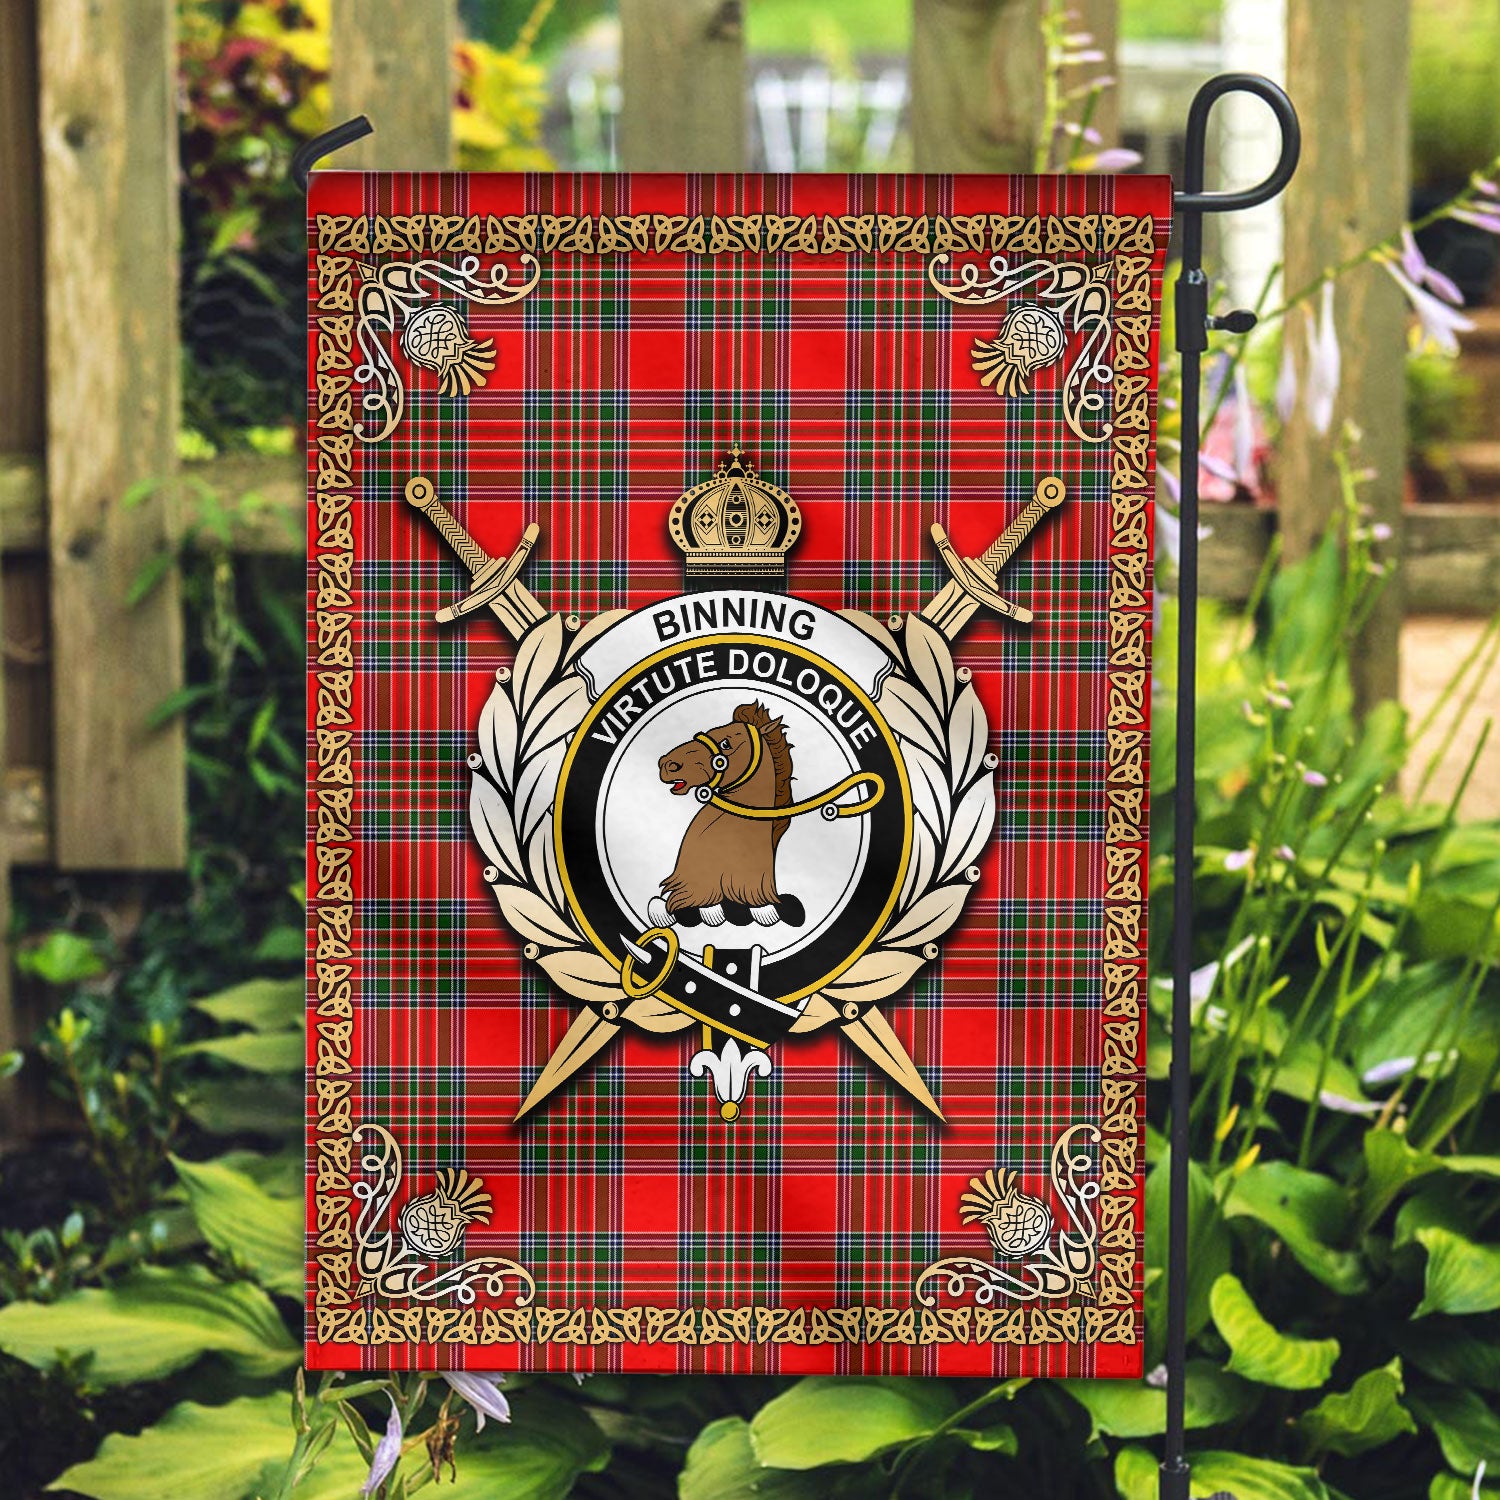 Binning (of Wallifoord) Tartan Crest Garden Flag - Celtic Thistle Style